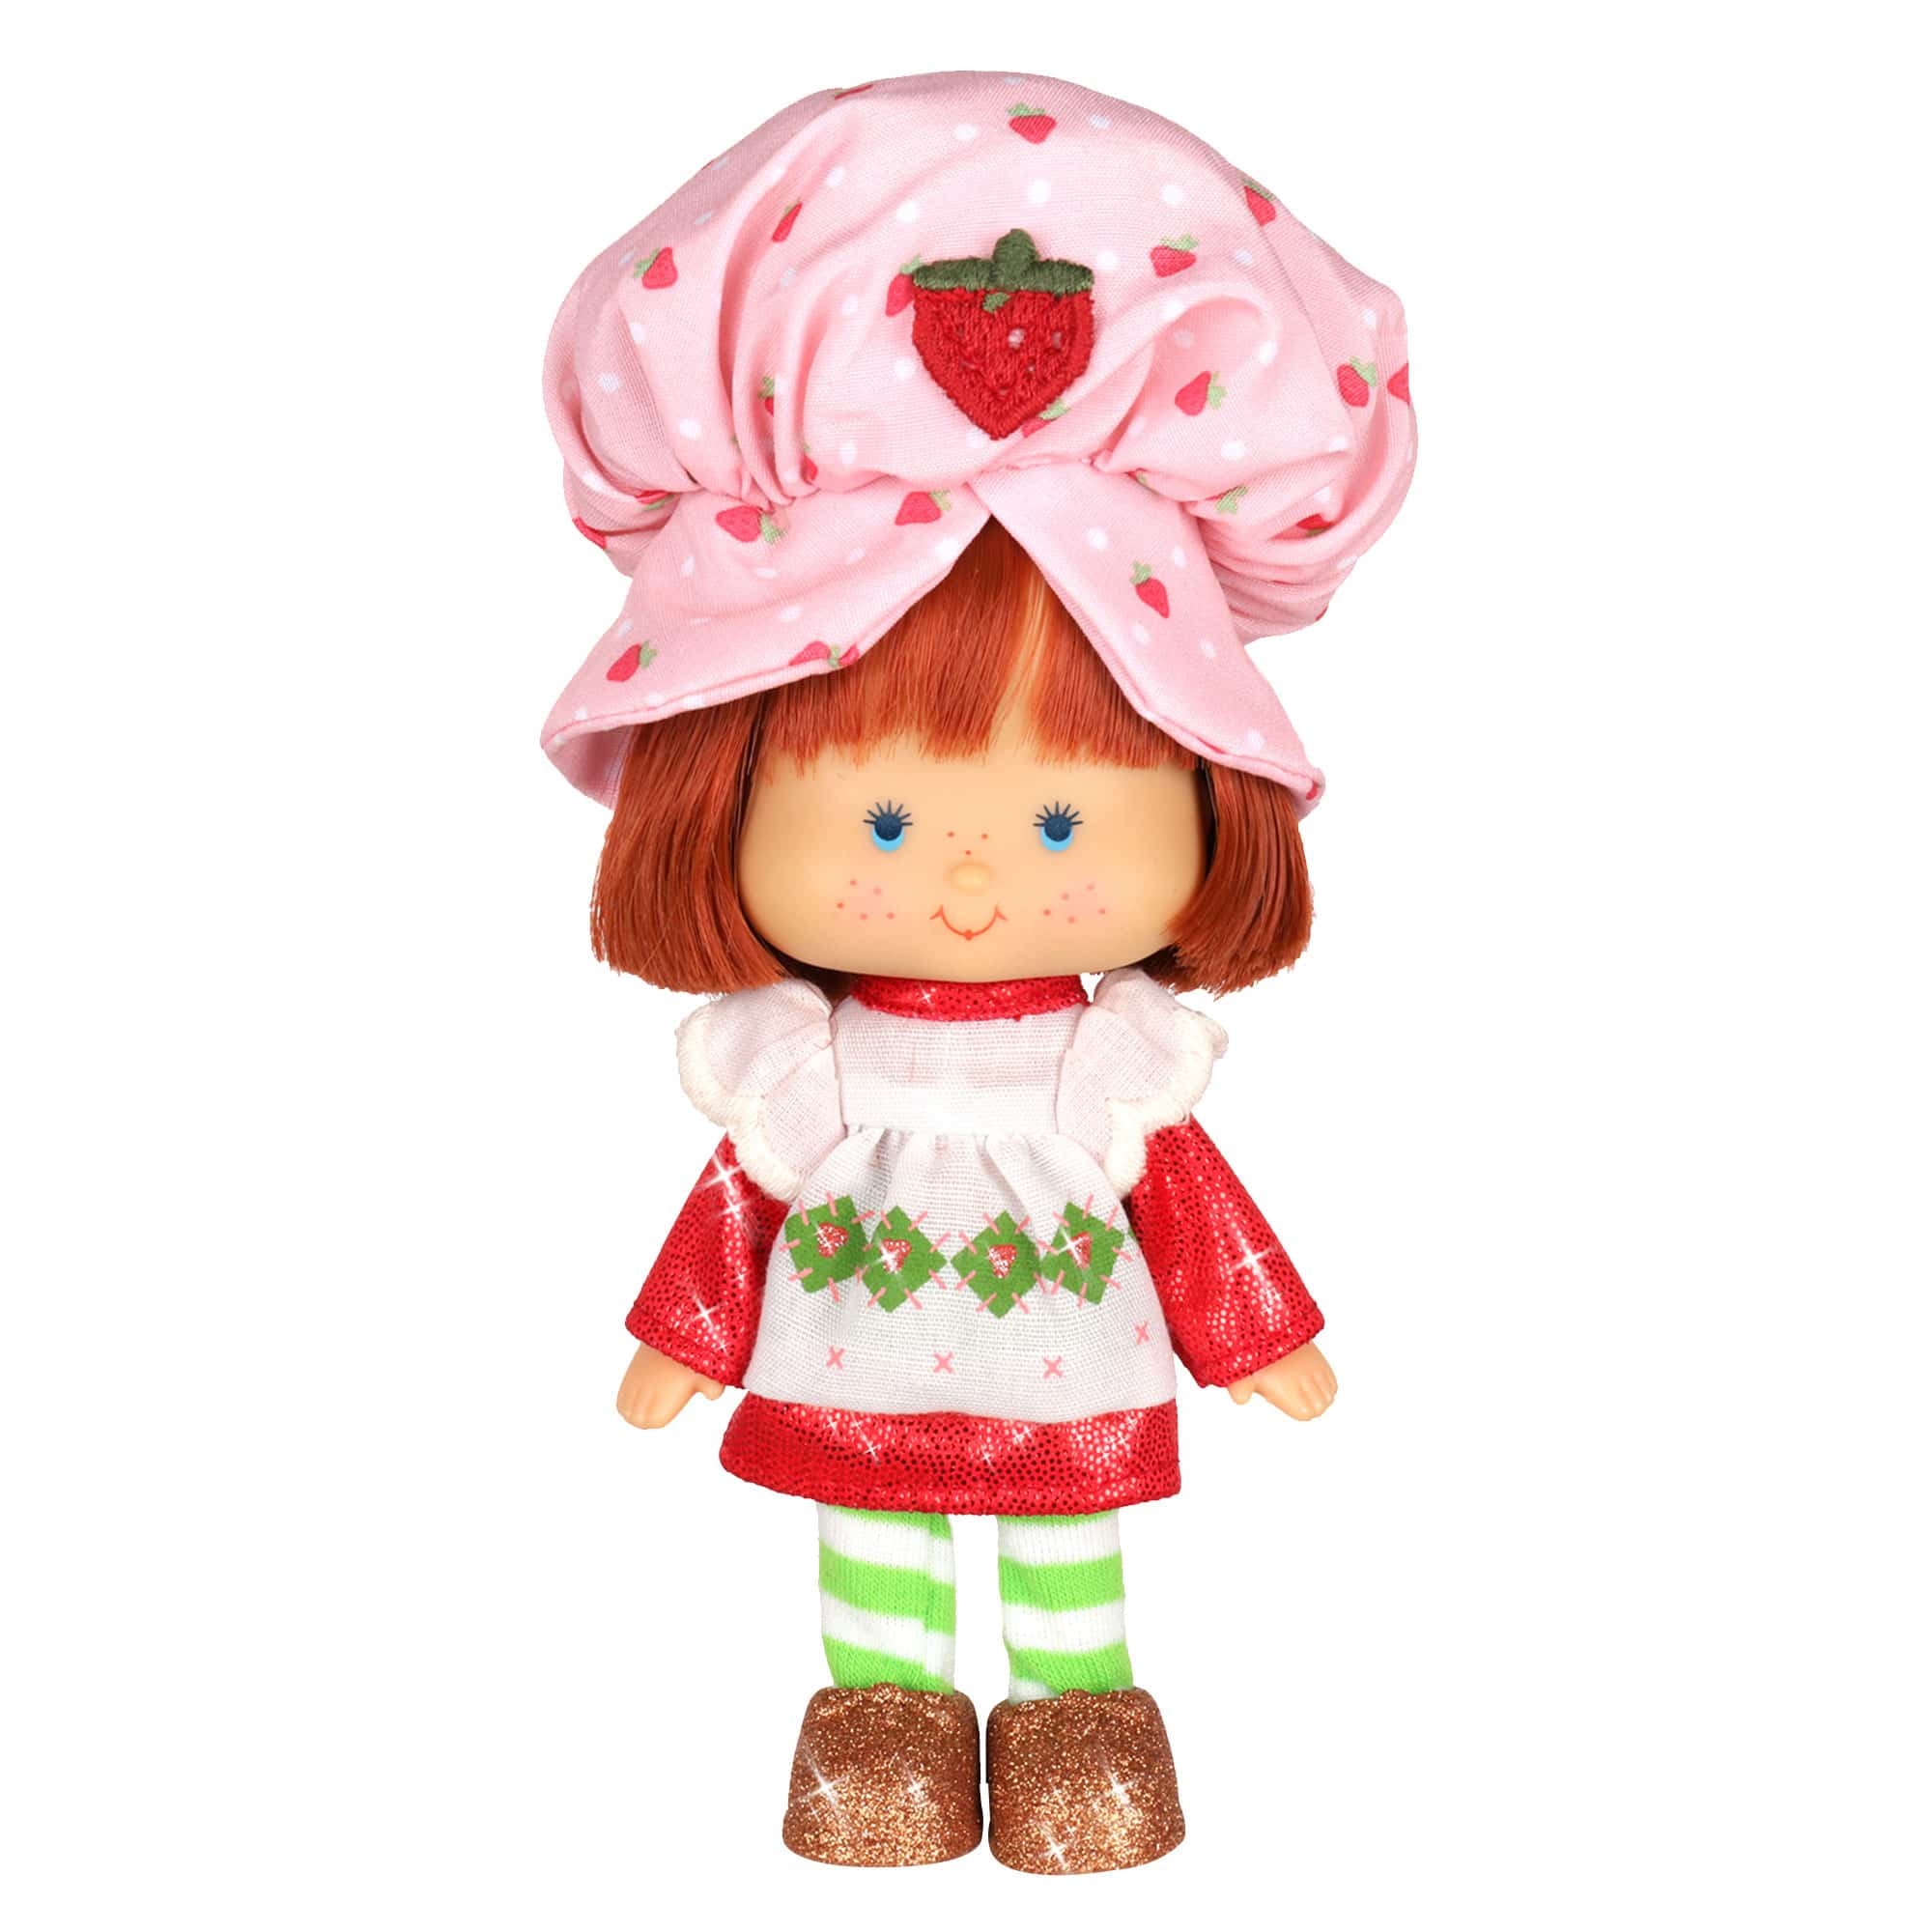 Retro Strawberry Shortcake Doll 6"